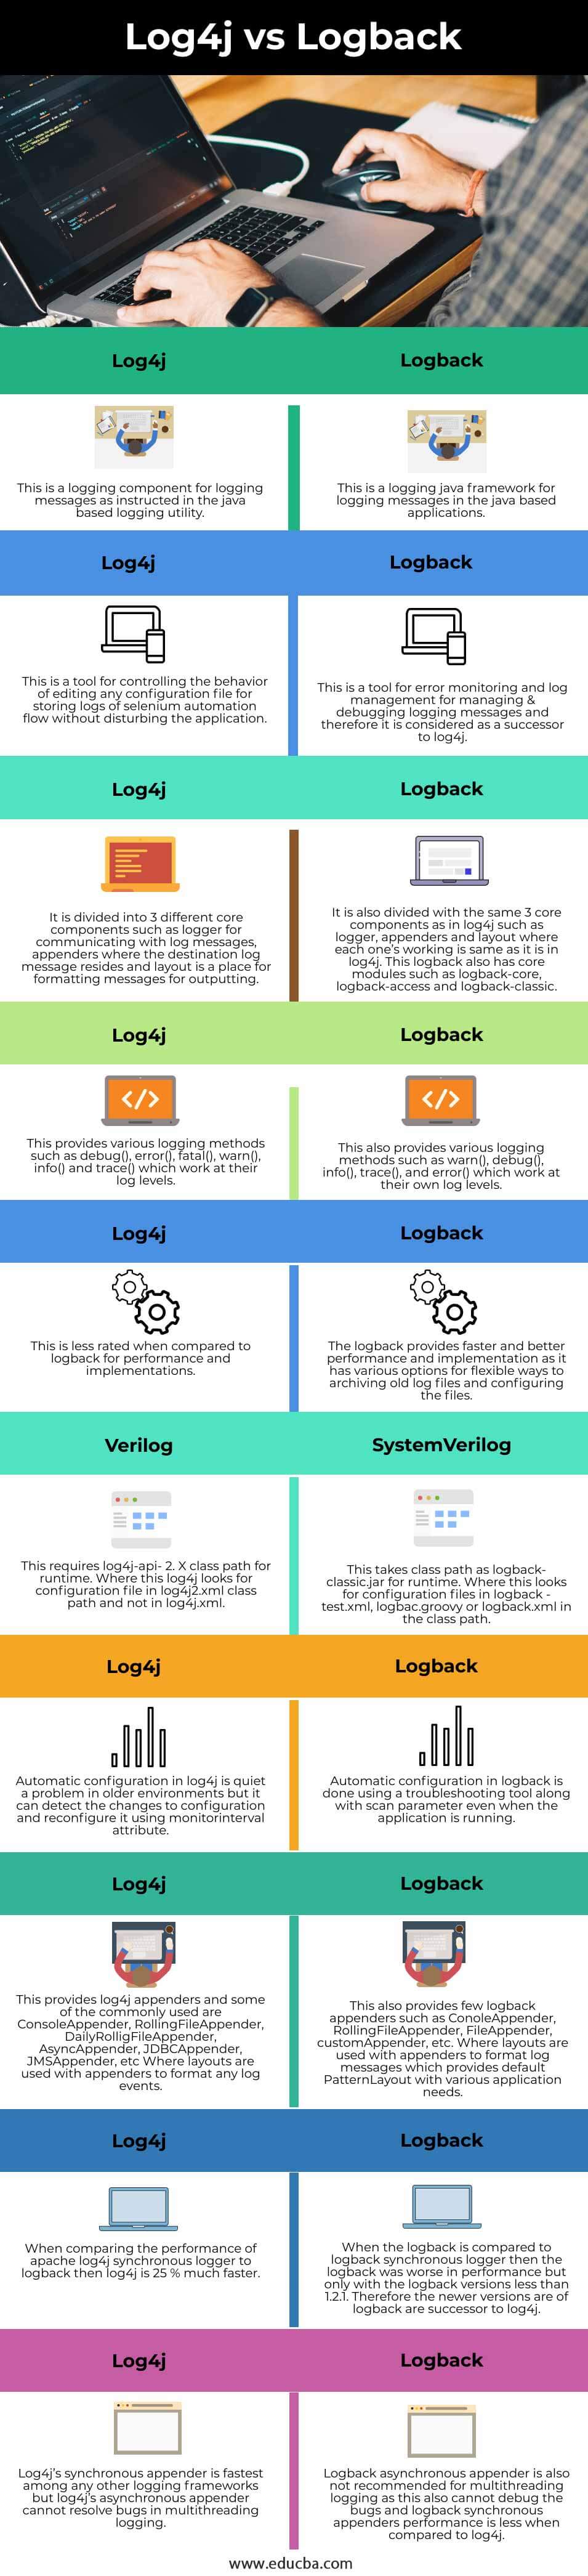 Log4j-vs-Logback-info